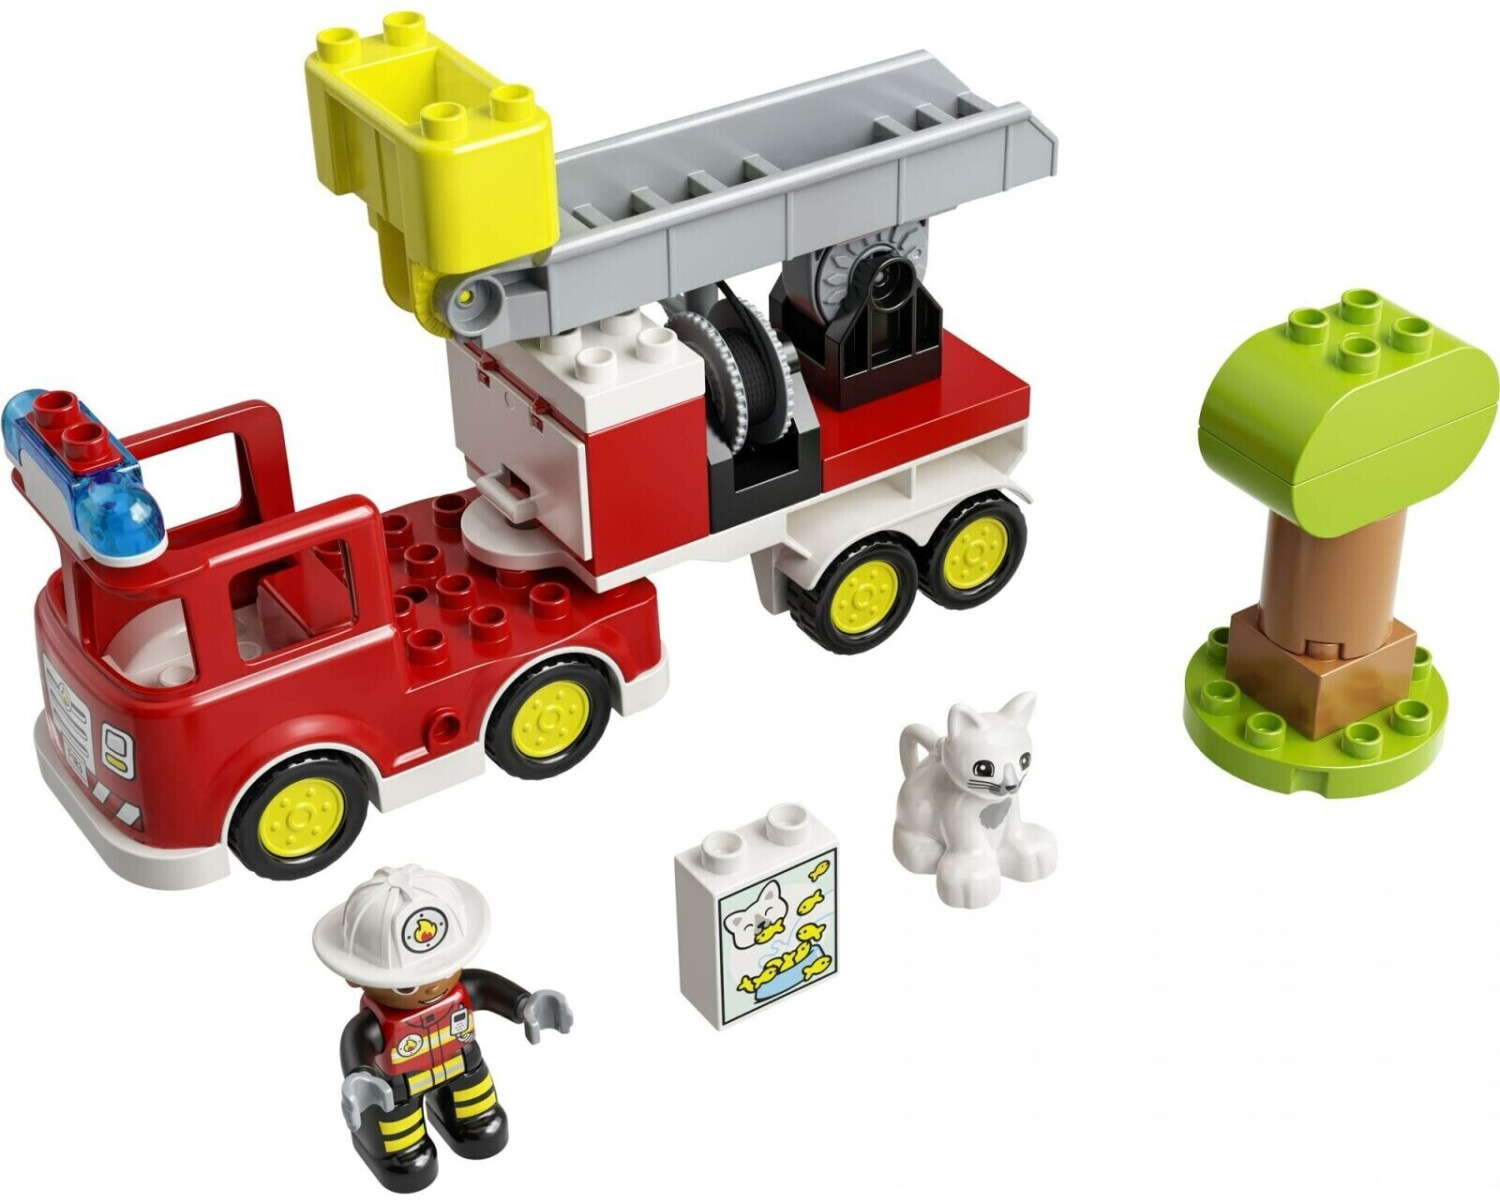 Duplo Le camion des pompiers LEGO : Comparateur, Avis, Prix